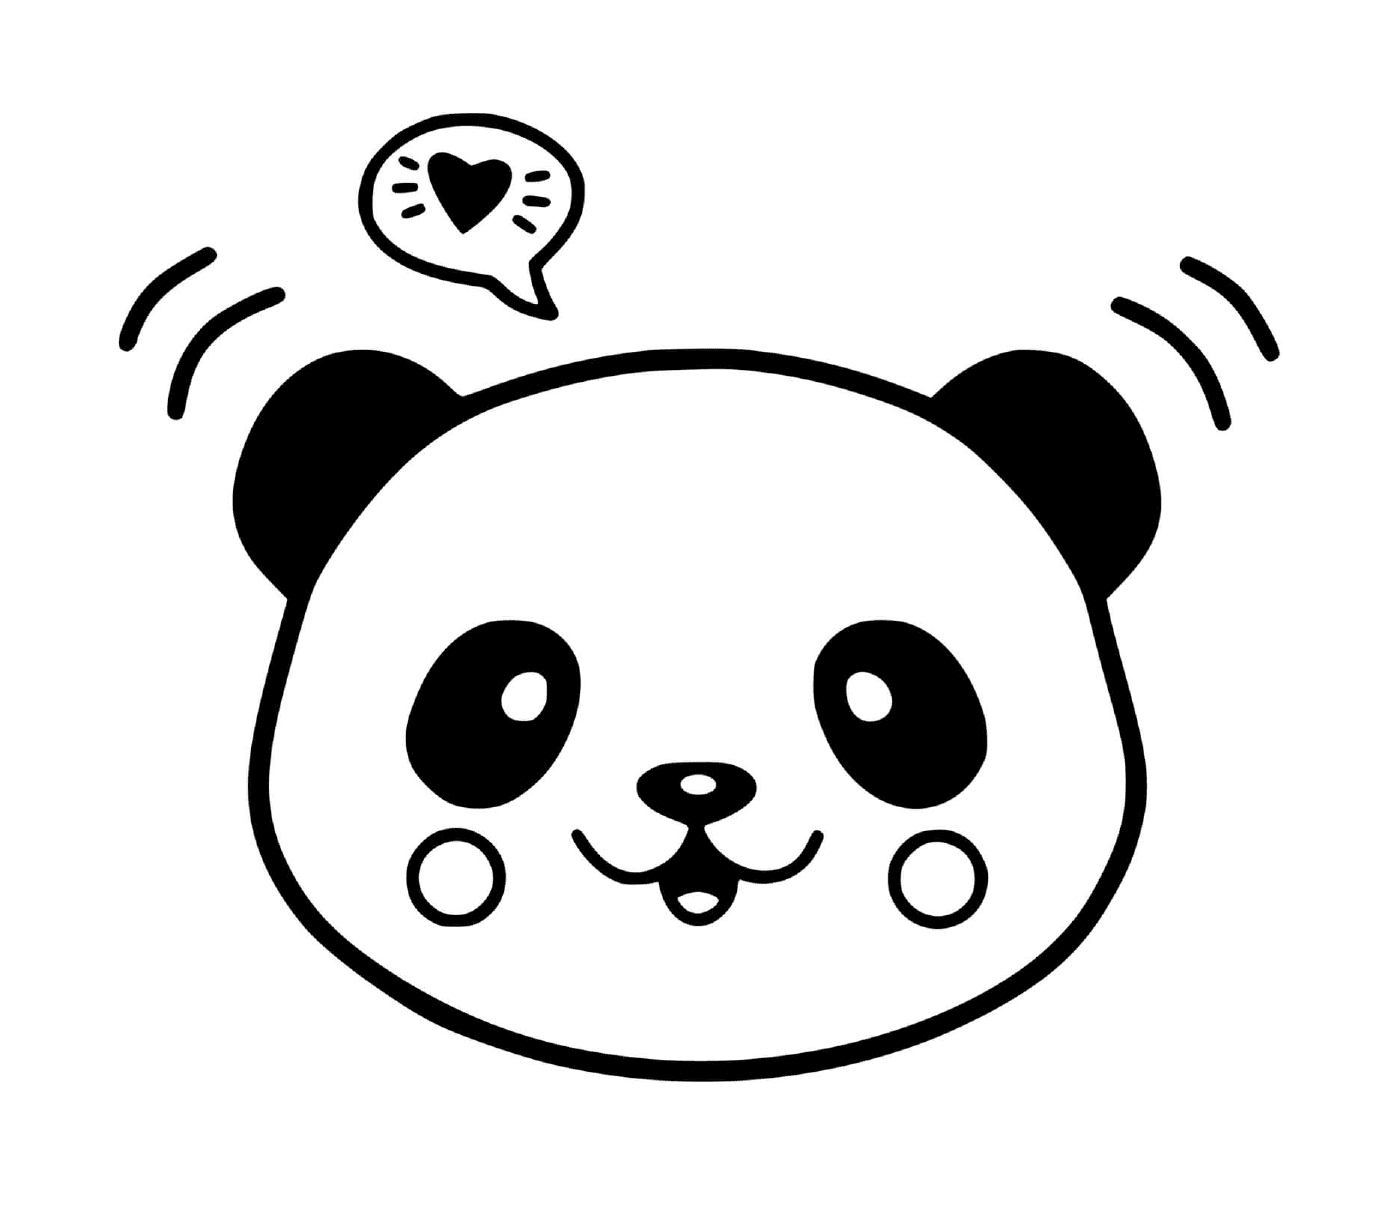  A panda 